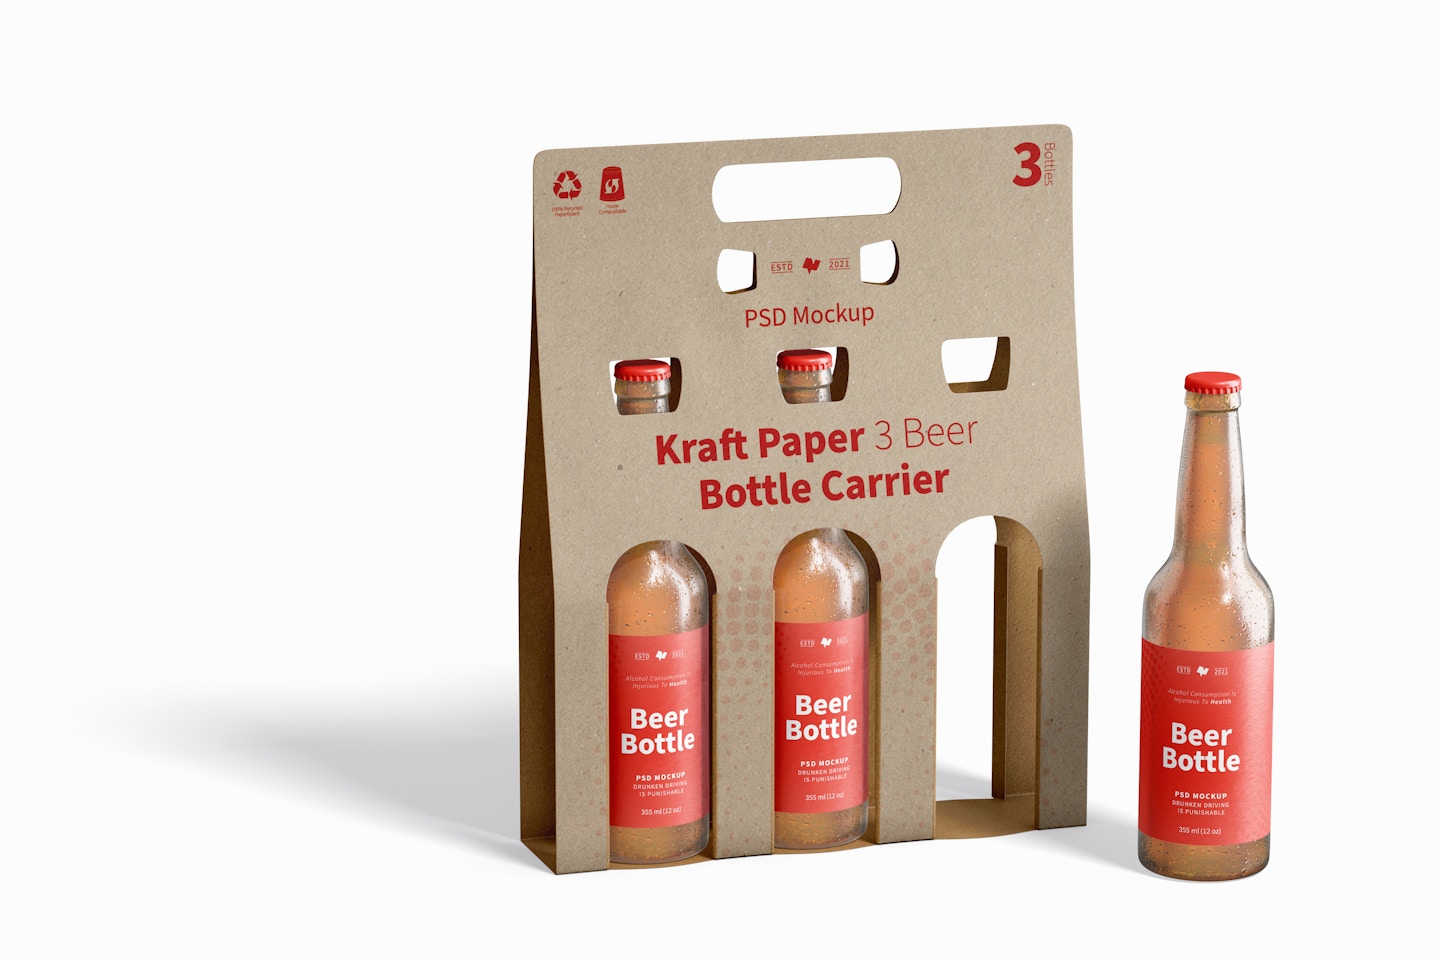 Kraft Paper 3 Beer Bottle Carrier Mockup